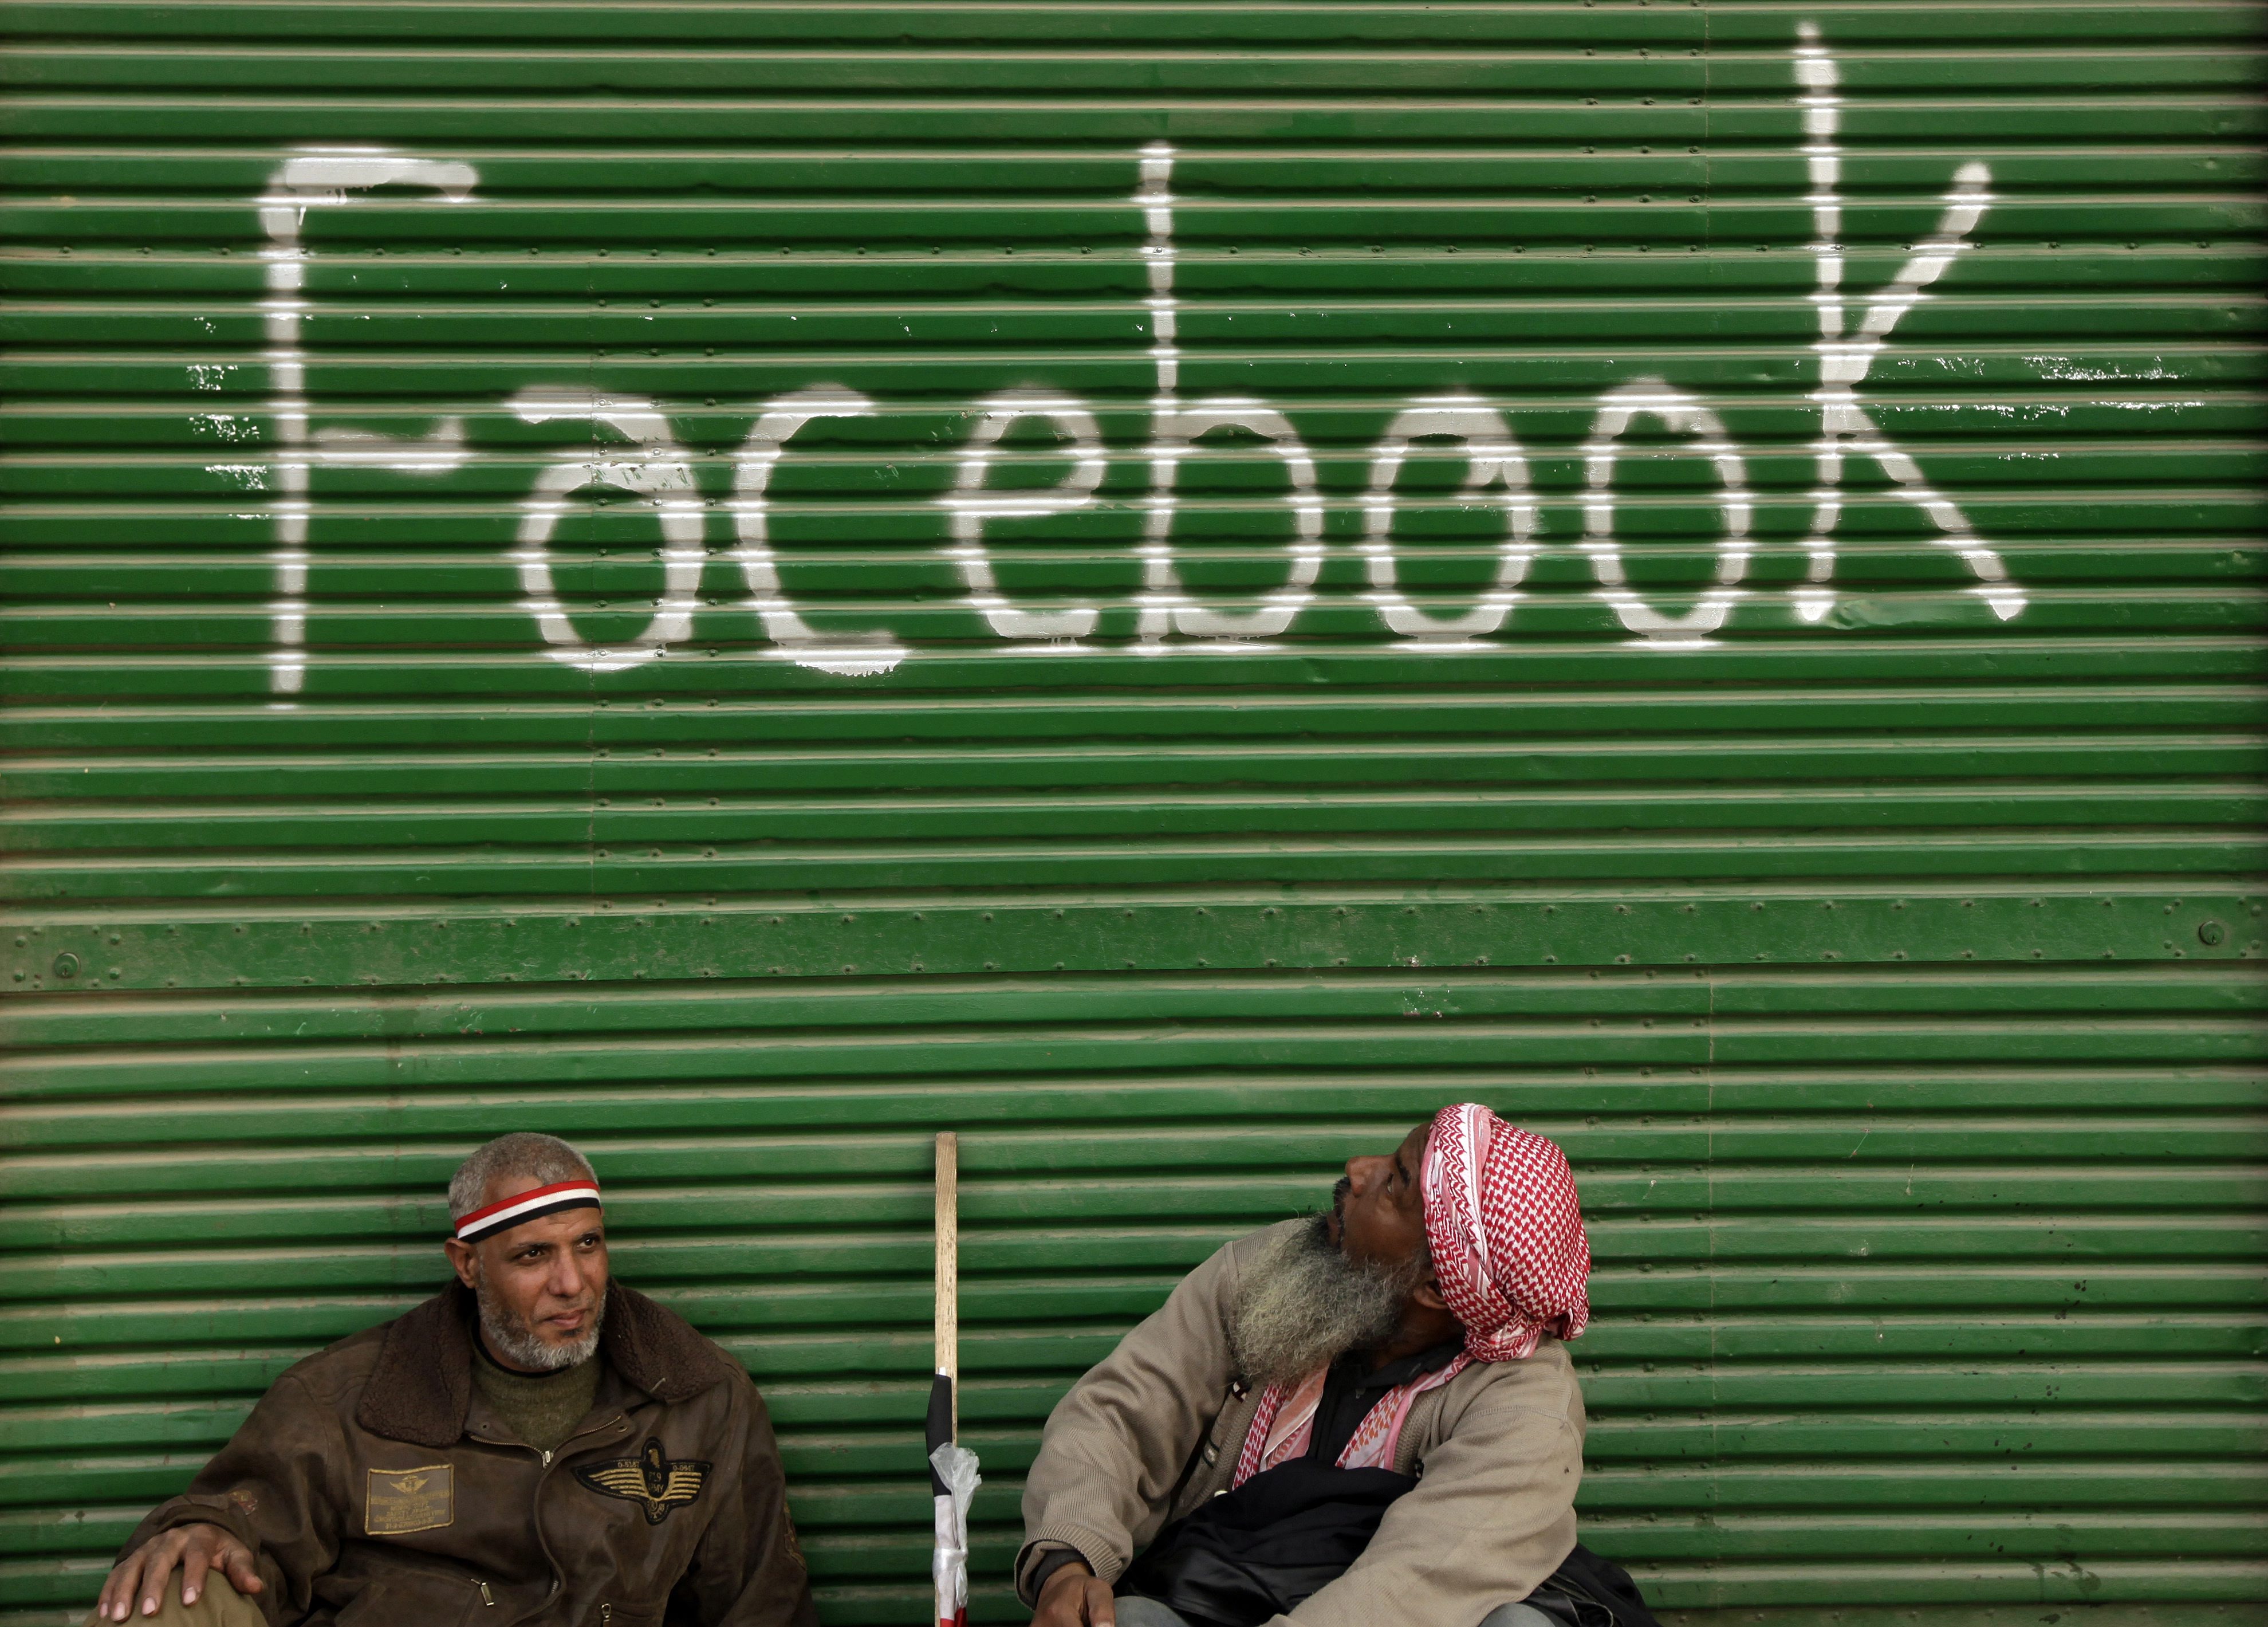 Събитията в Египет и Тунис показаха значителната полза от социалните мрежи като Facebook за демокрацията, заяви сенатор от САЩ